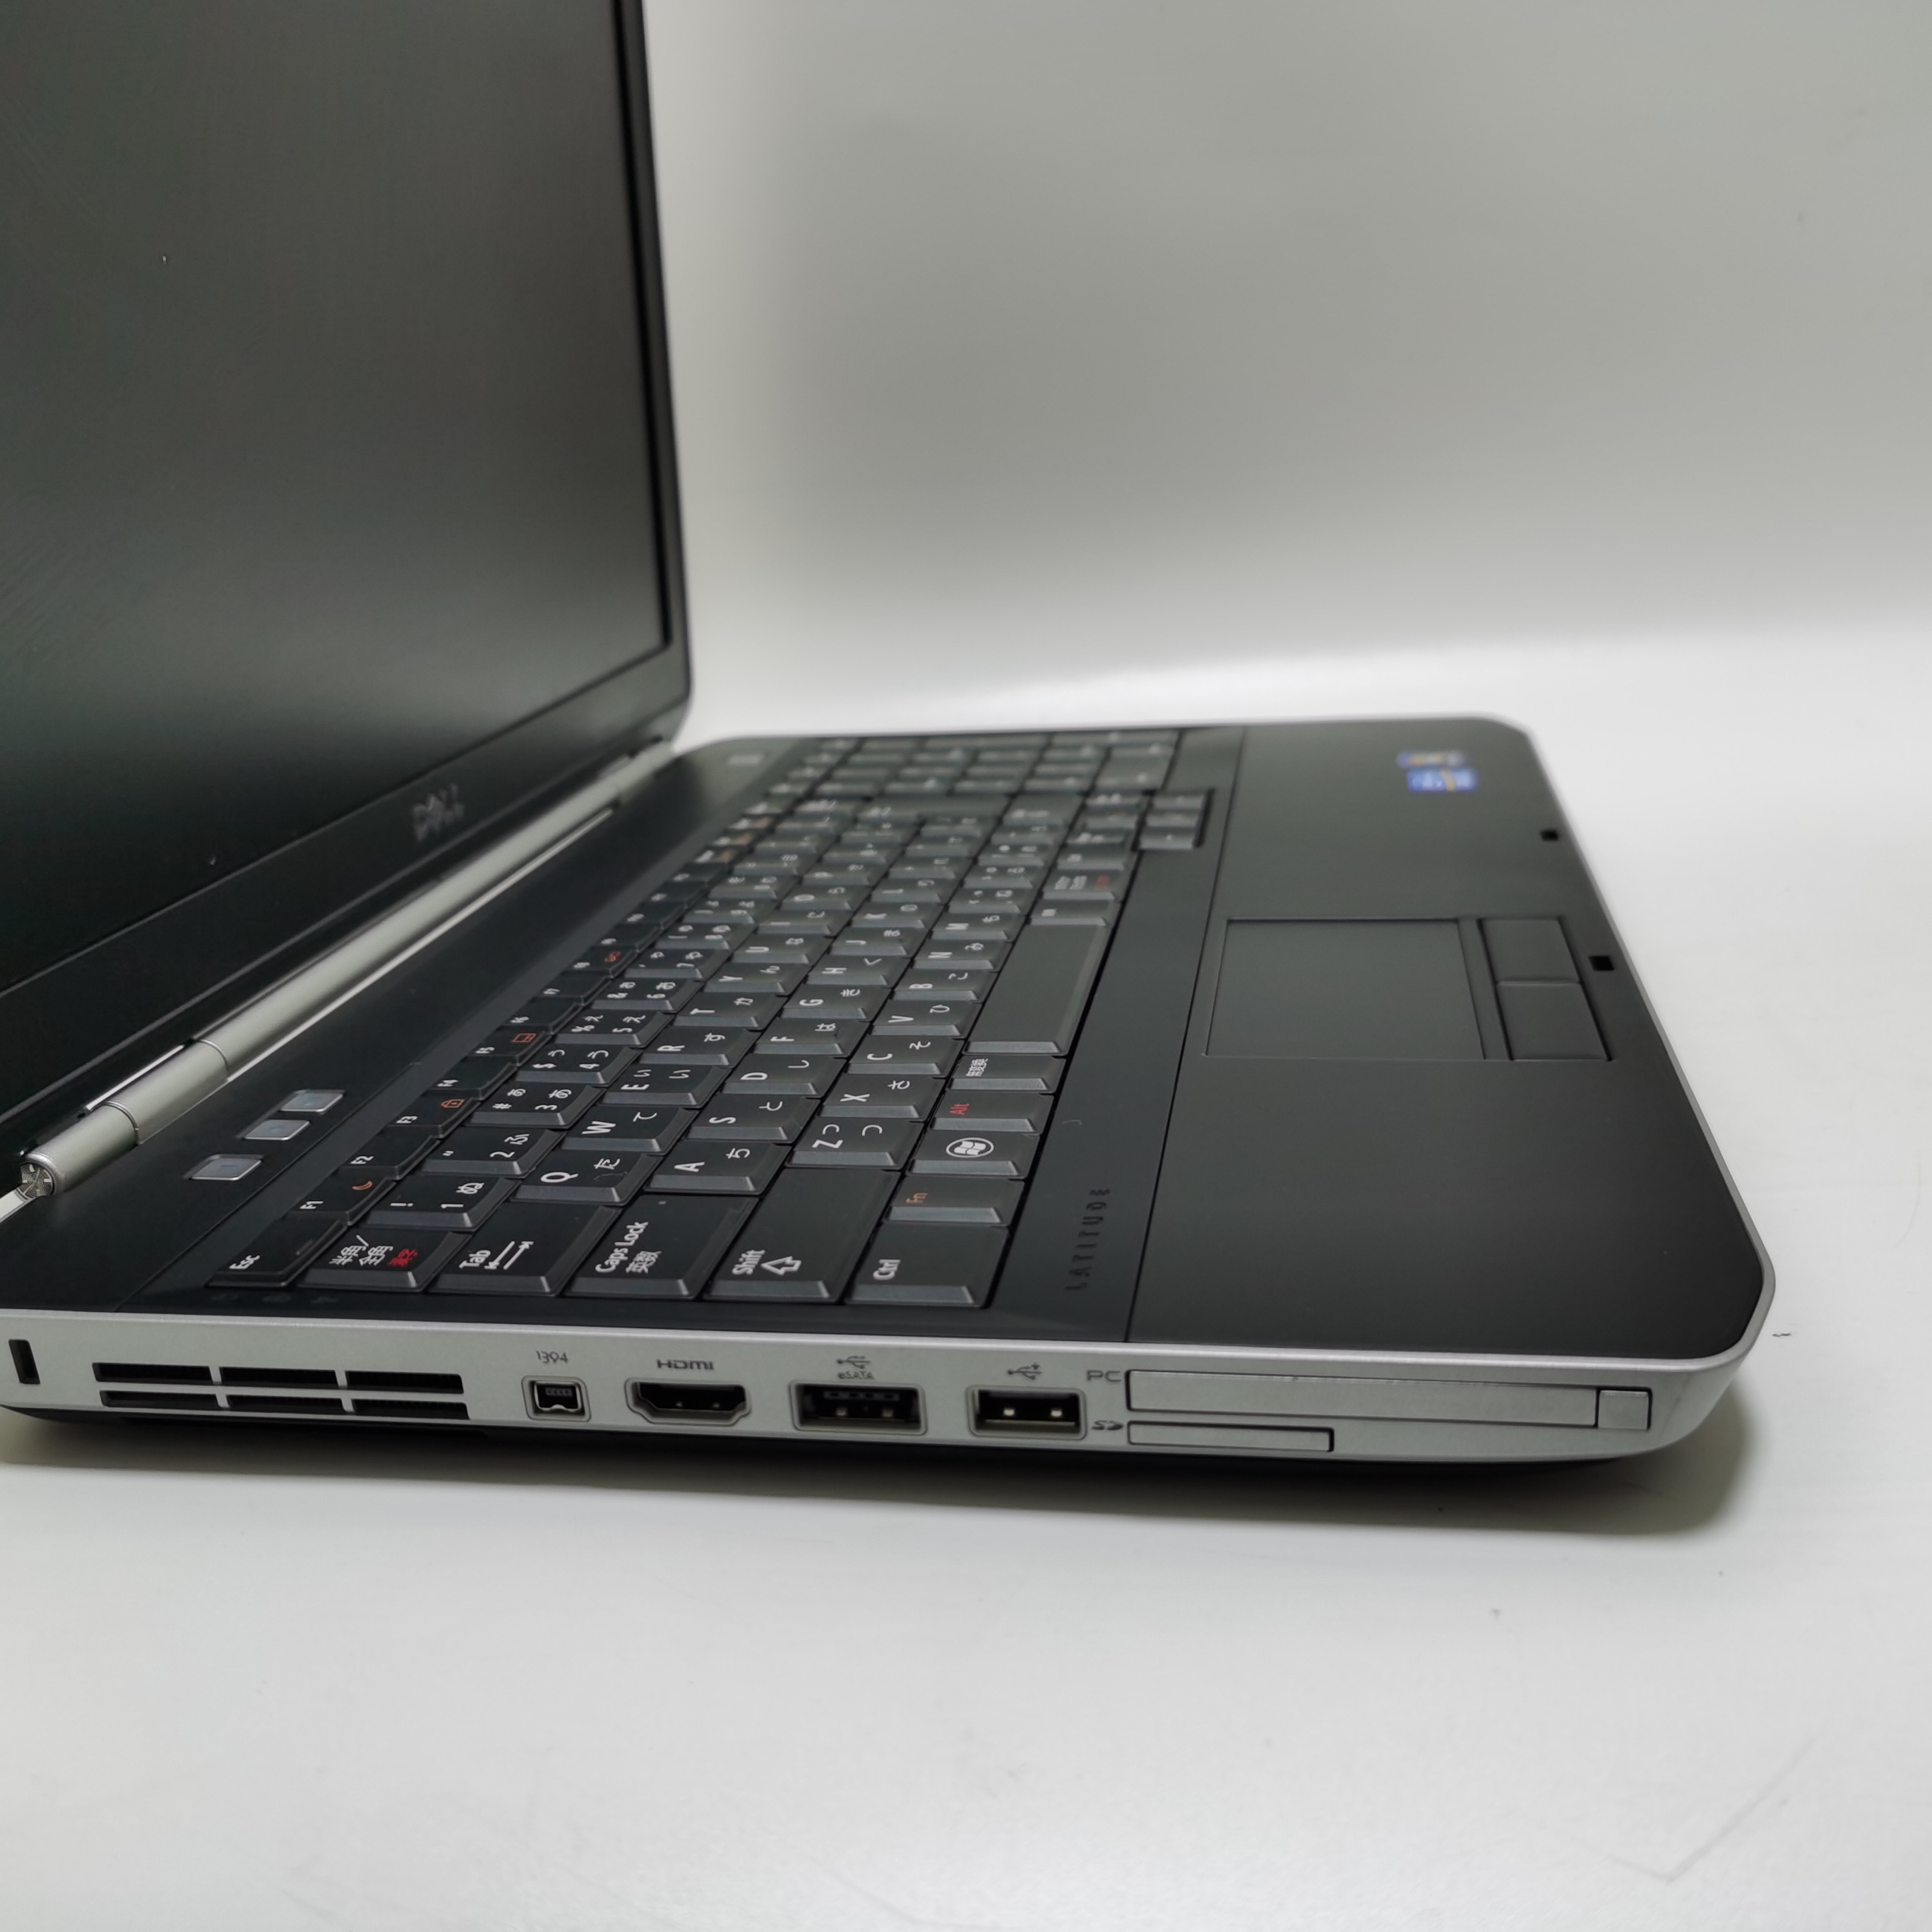 รูปภาพเพิ่มเติมเกี่ยวกับ โน๊ตบุ๊ค notebook Dell E5530 i5 gen3 15.6 inch  //  Lenovo ThinkPad  M14 โน๊ตบุ๊คมือสอง  โน๊ตบุ๊คถูกๆๆ  คอมพิวเตอร์  คอม  laptop pc